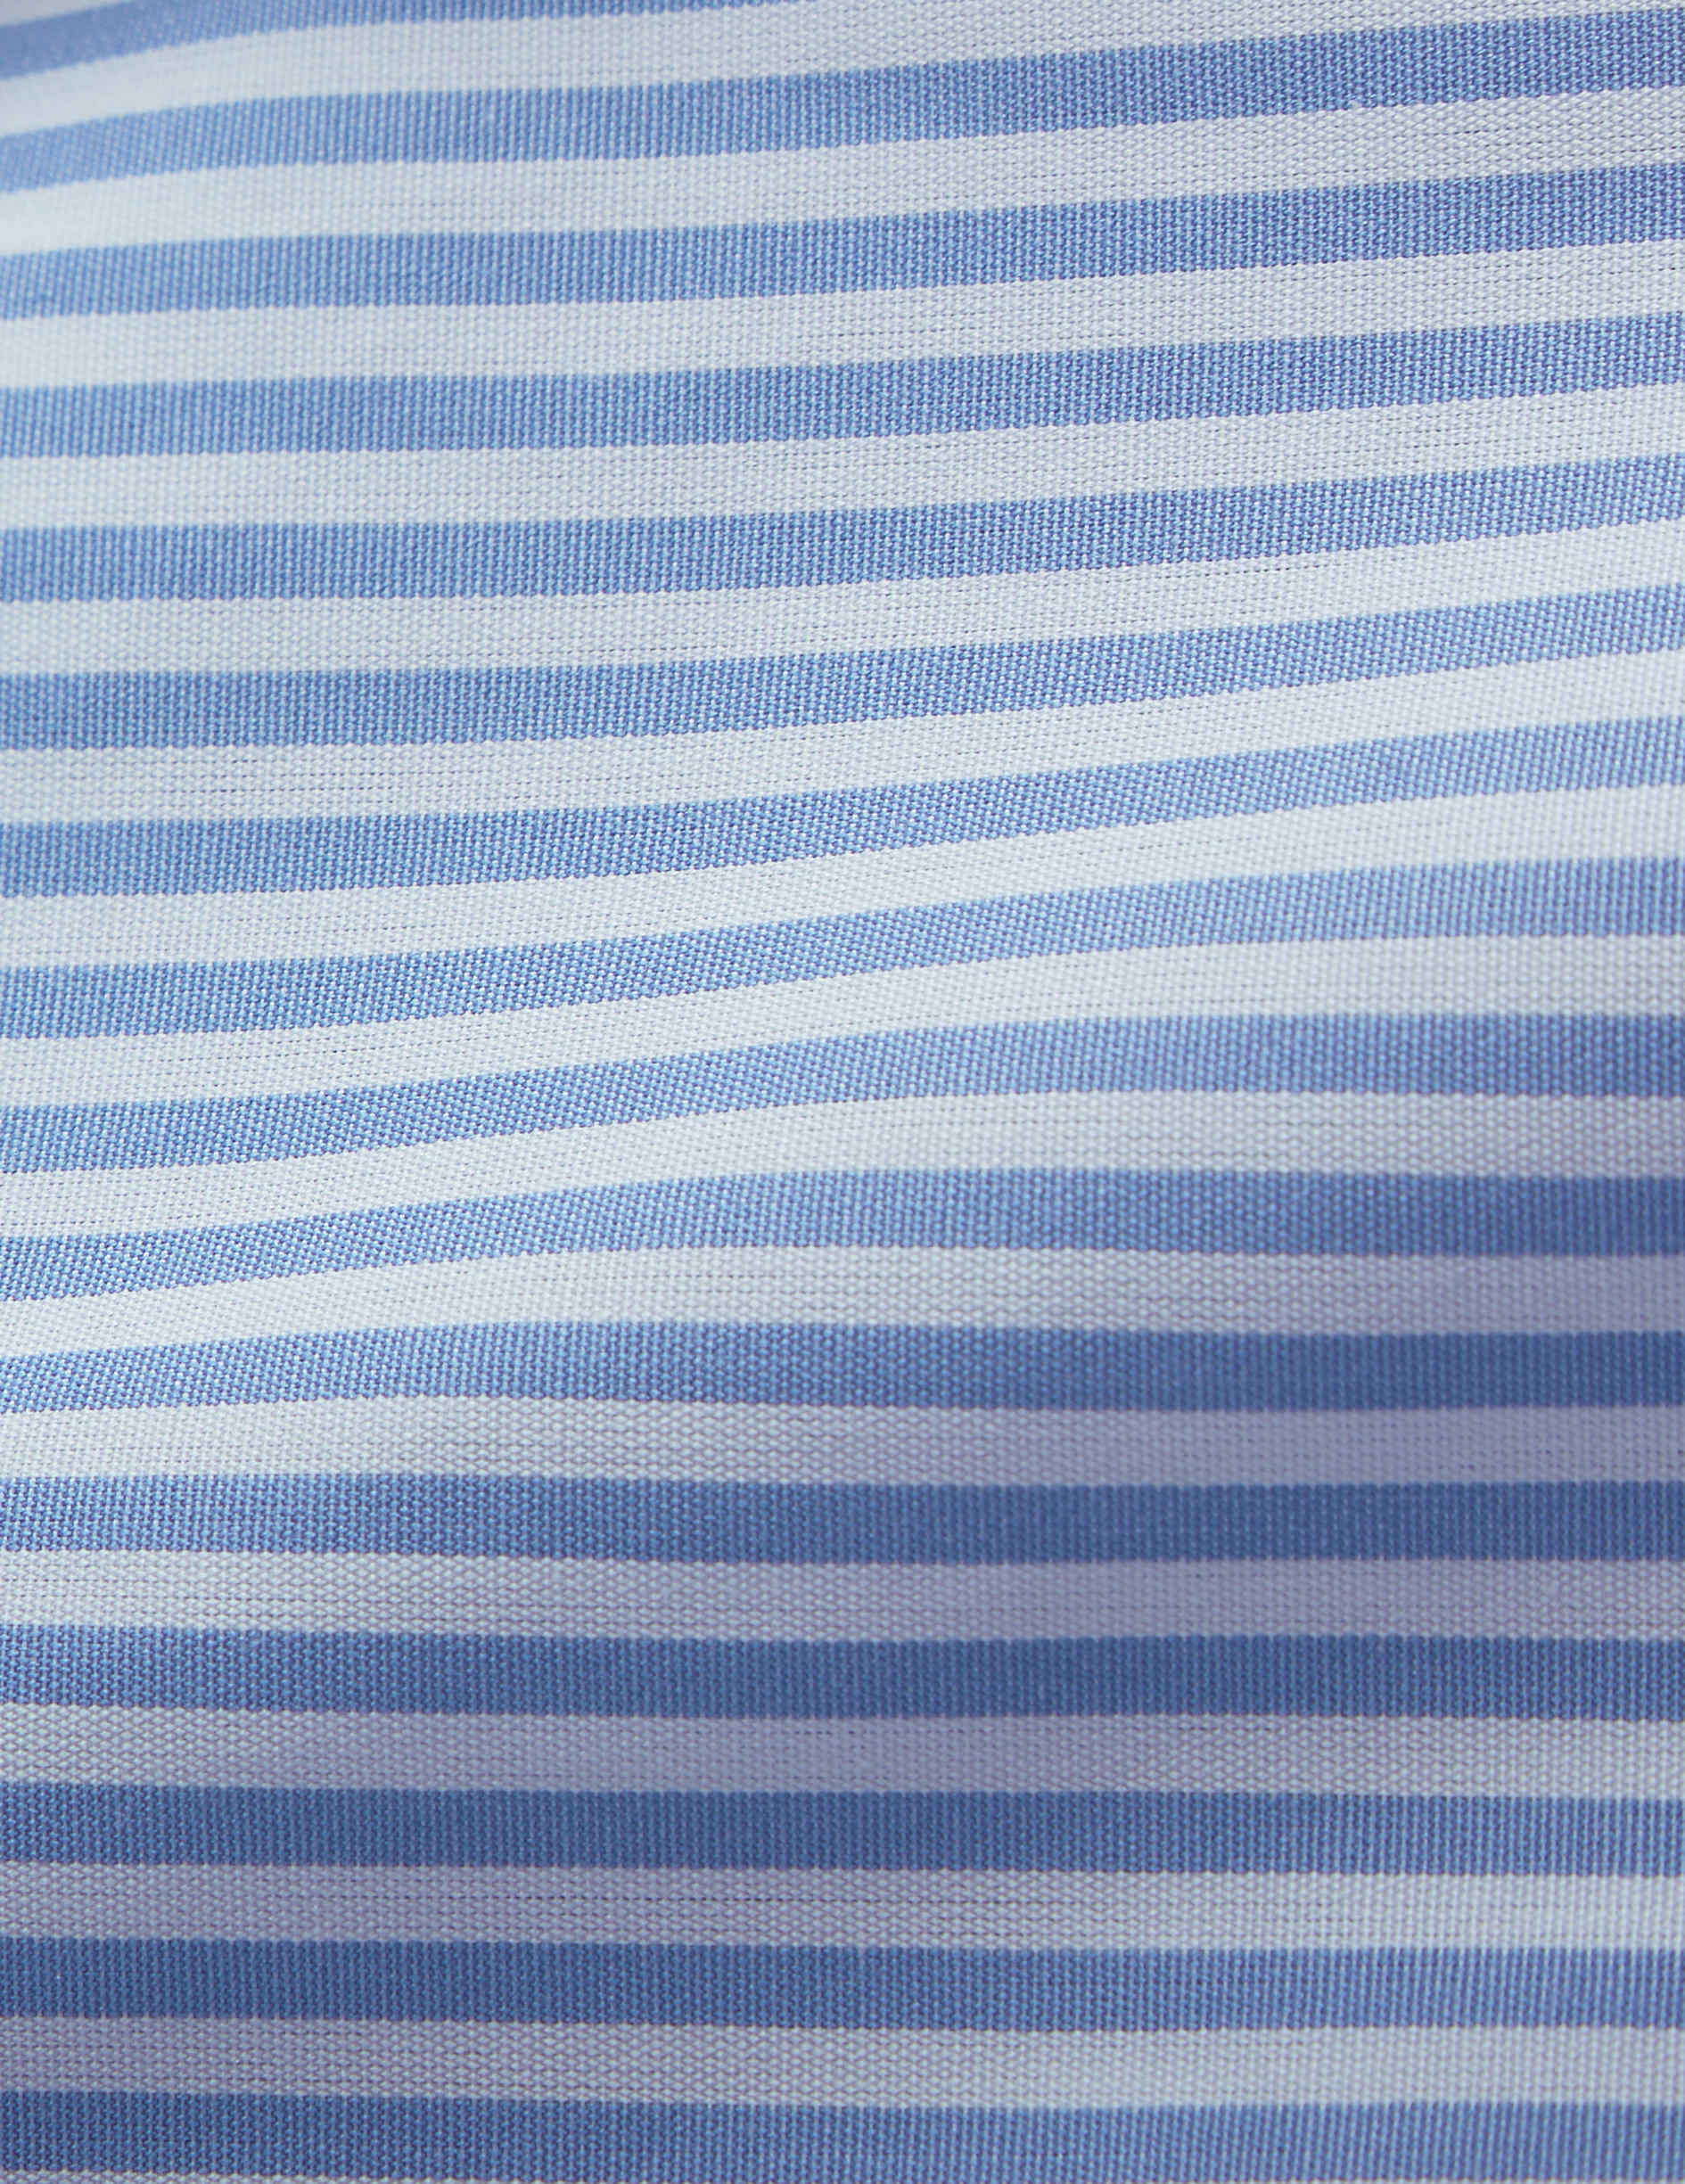 Chemise ajustée rayée bleue - Popeline - Col Figaret - Poignets Mousquetaires